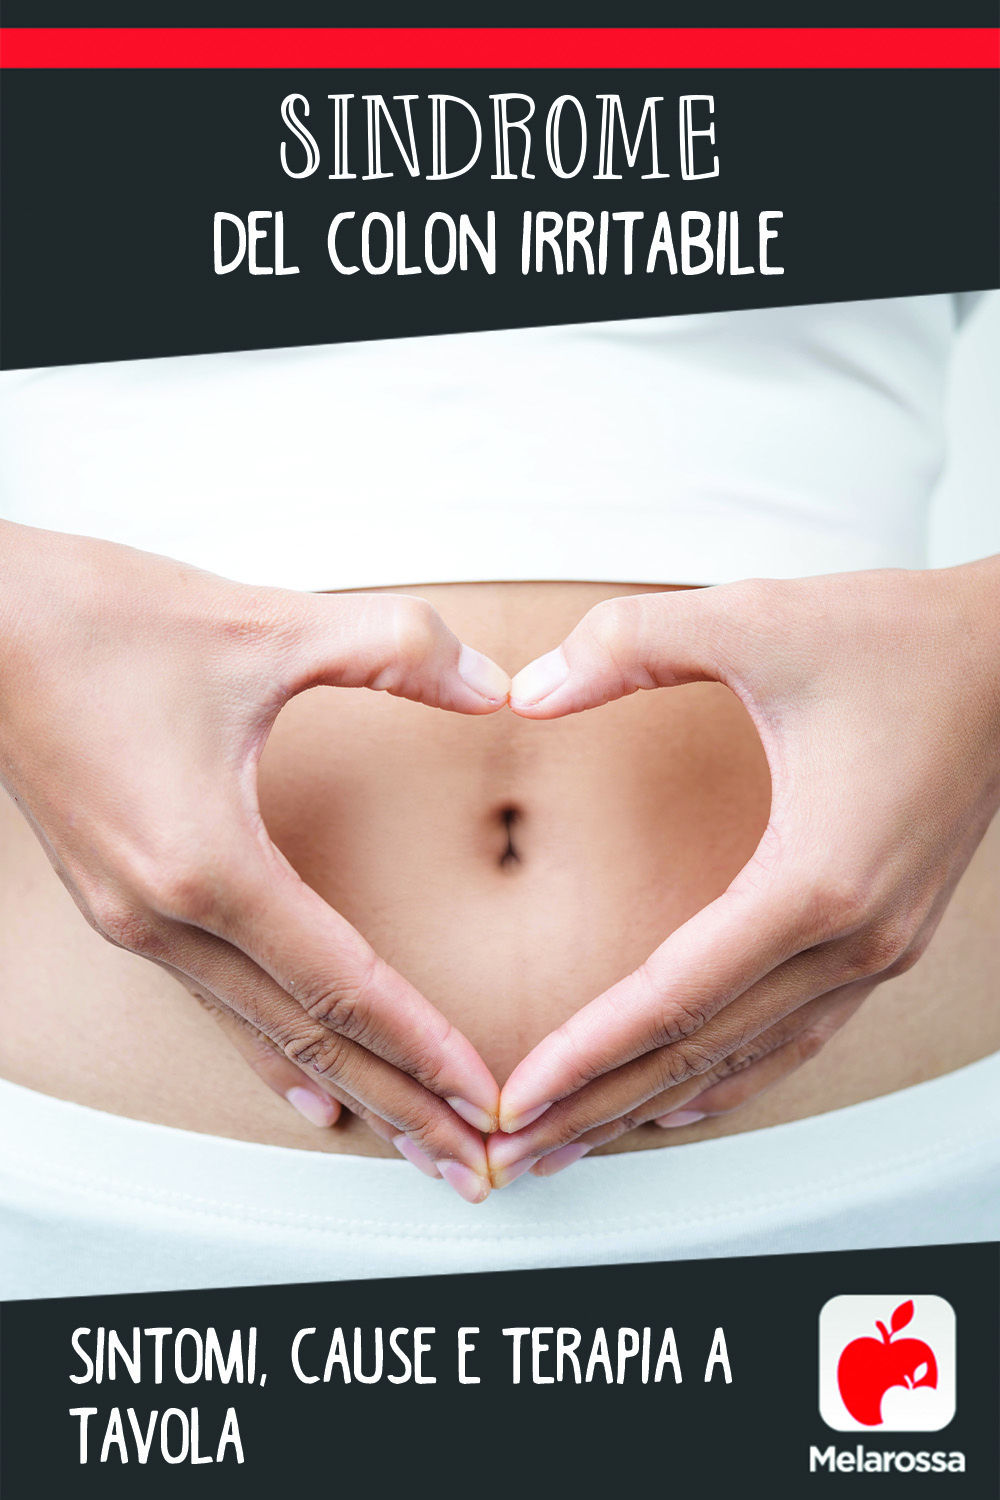 sindrome del colon irritabile: cos'è, cause, sintomi e cure 